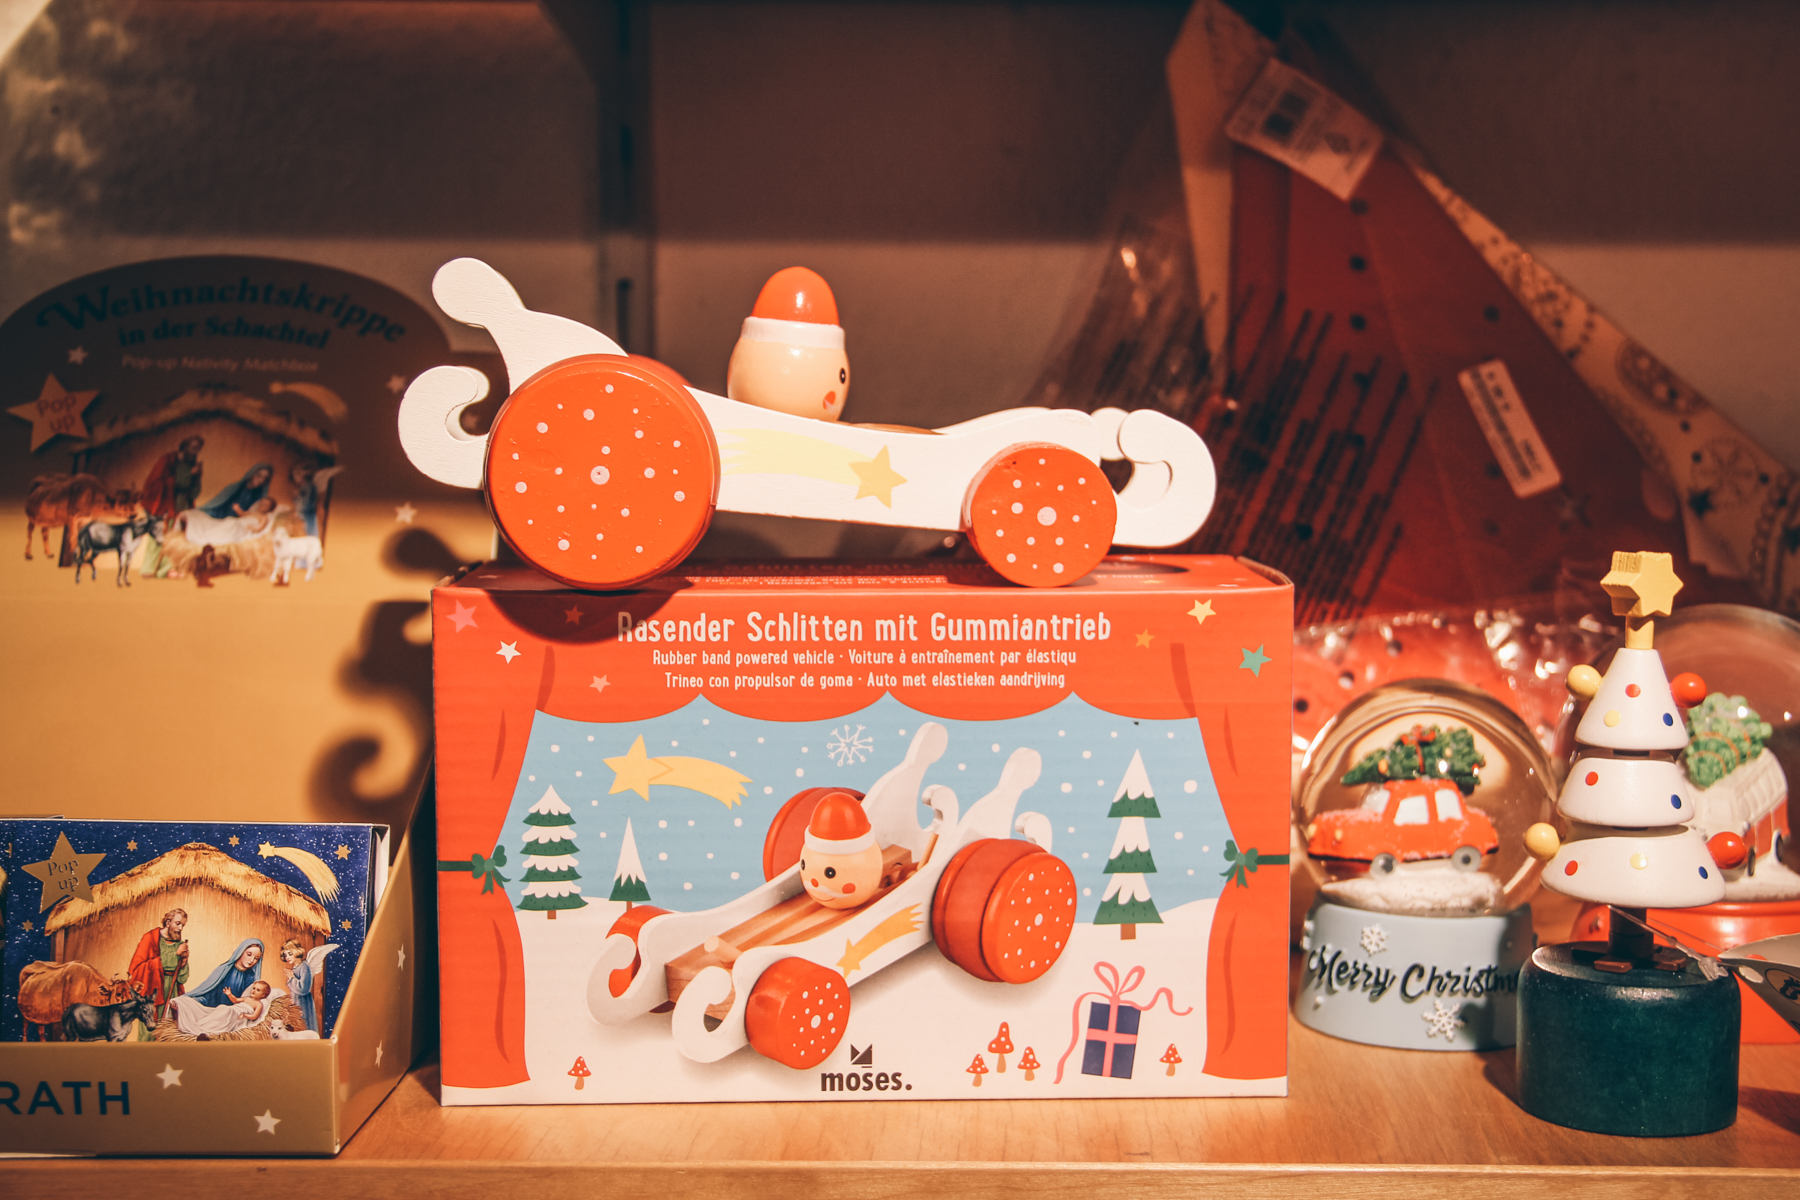 Wie der Weihnachtsmann zu uns kommt? Auf seinem rasenden Schlitten natürlich!  – ©wunderland media GmbH